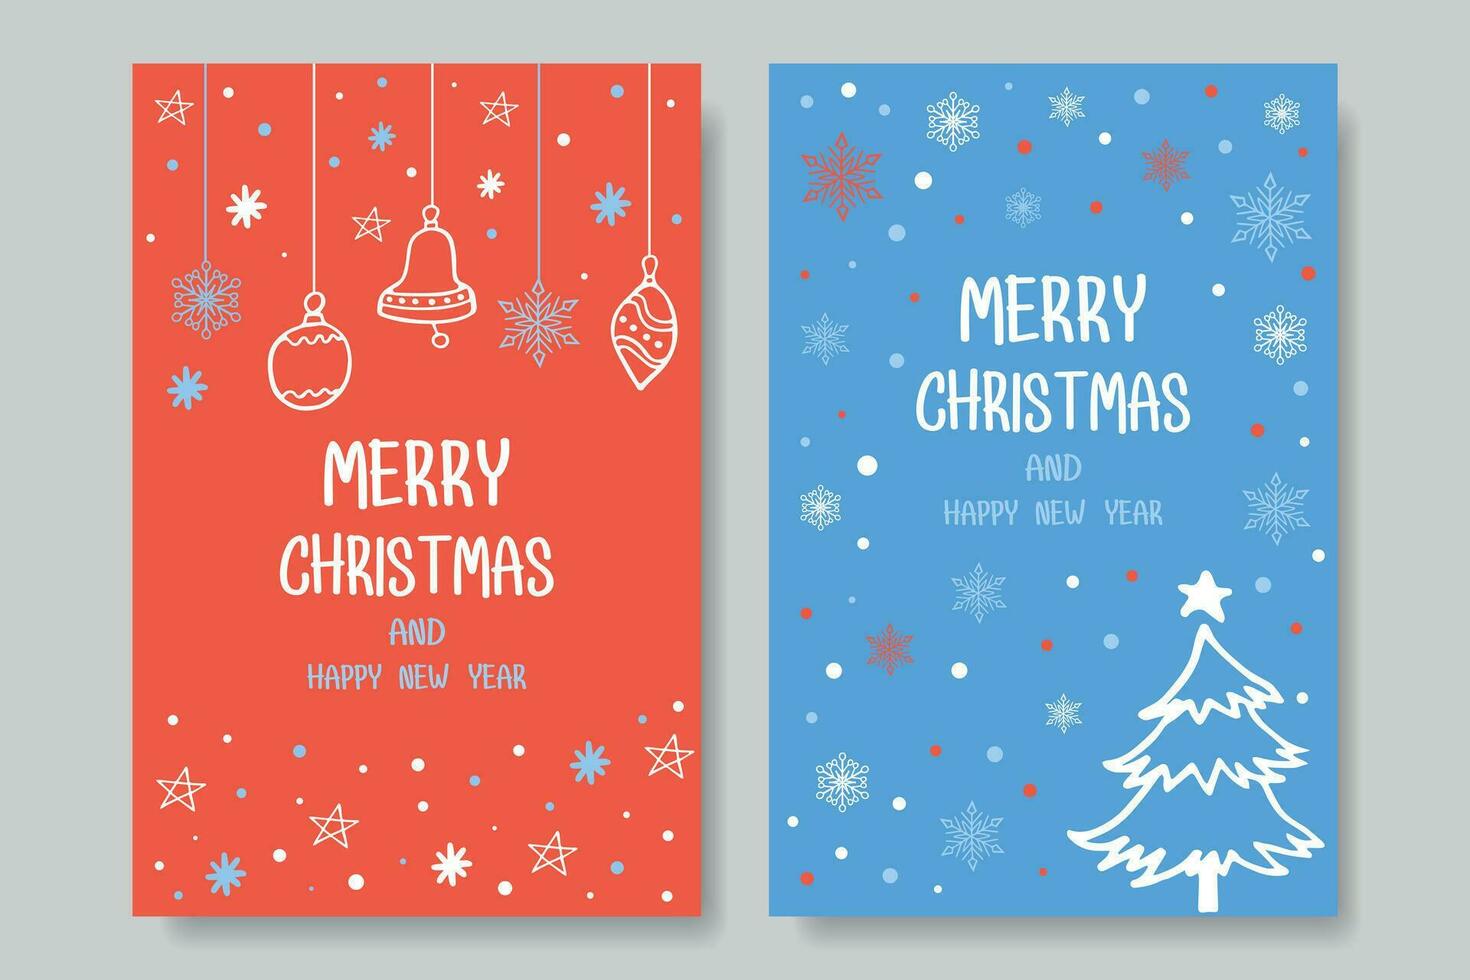 Kerstmis boom, sneeuwvlokken, bessen, handgemaakt elementen. winter vector illustratie voor Kerstmis uitnodiging, kaart, banier, sociaal media na.